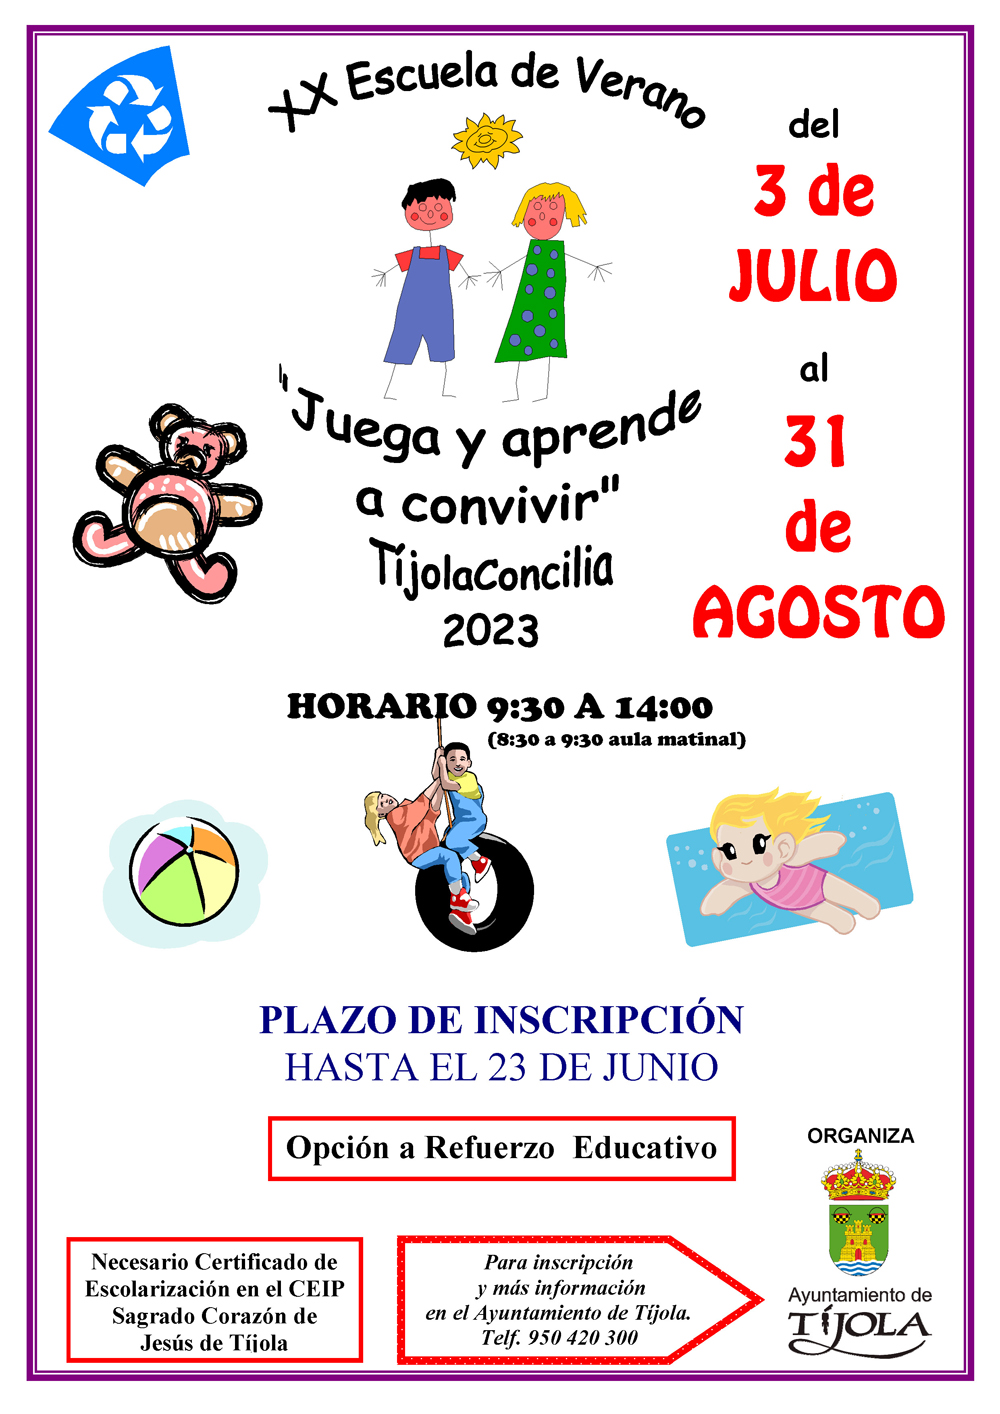 Imagen del Cartel de la Escuela de Verano 2023. Imágenes de dibujos infantiles de fondo.